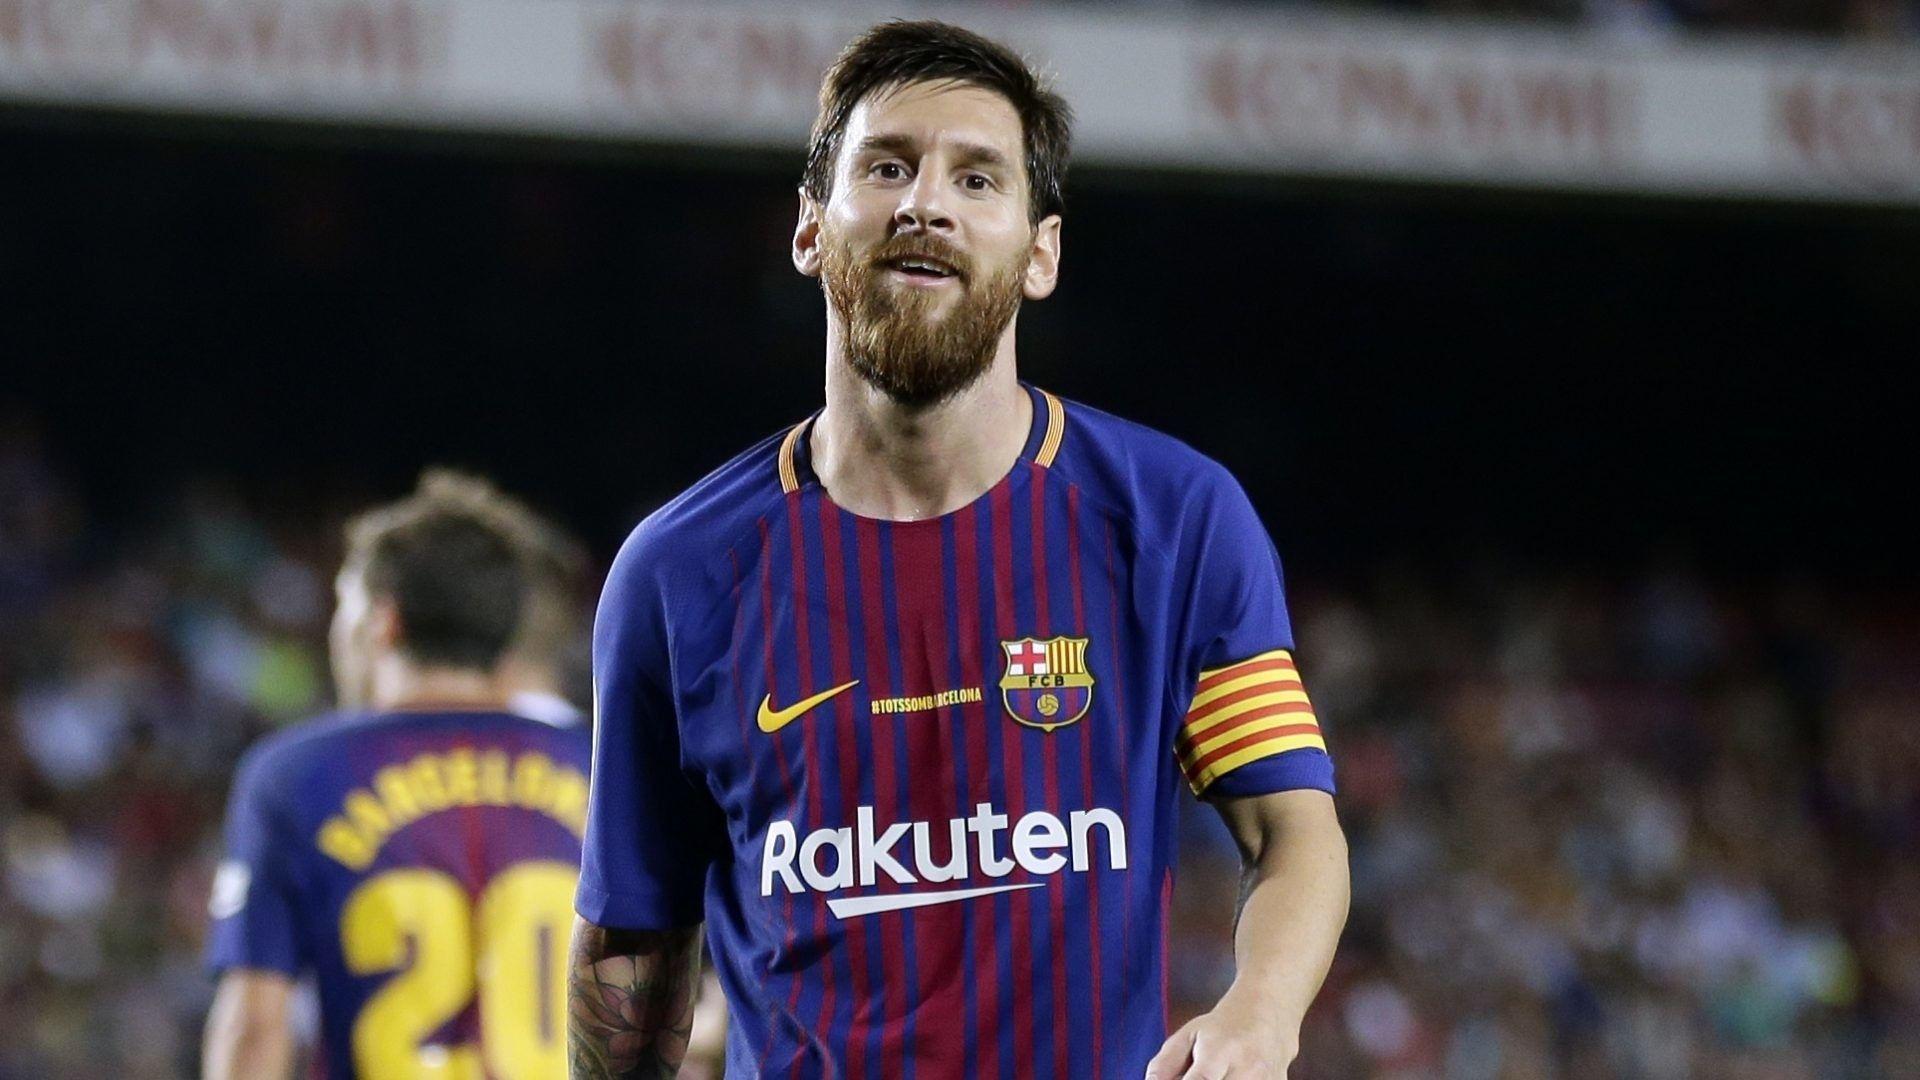 1920x1080 Hình nền Lionel Messi Tải xuống Hình ảnh HD chất lượng cao - Hình nền Lionel Messi 4k 2018 - 1920x1080 - Tải xuống Hình nền HD